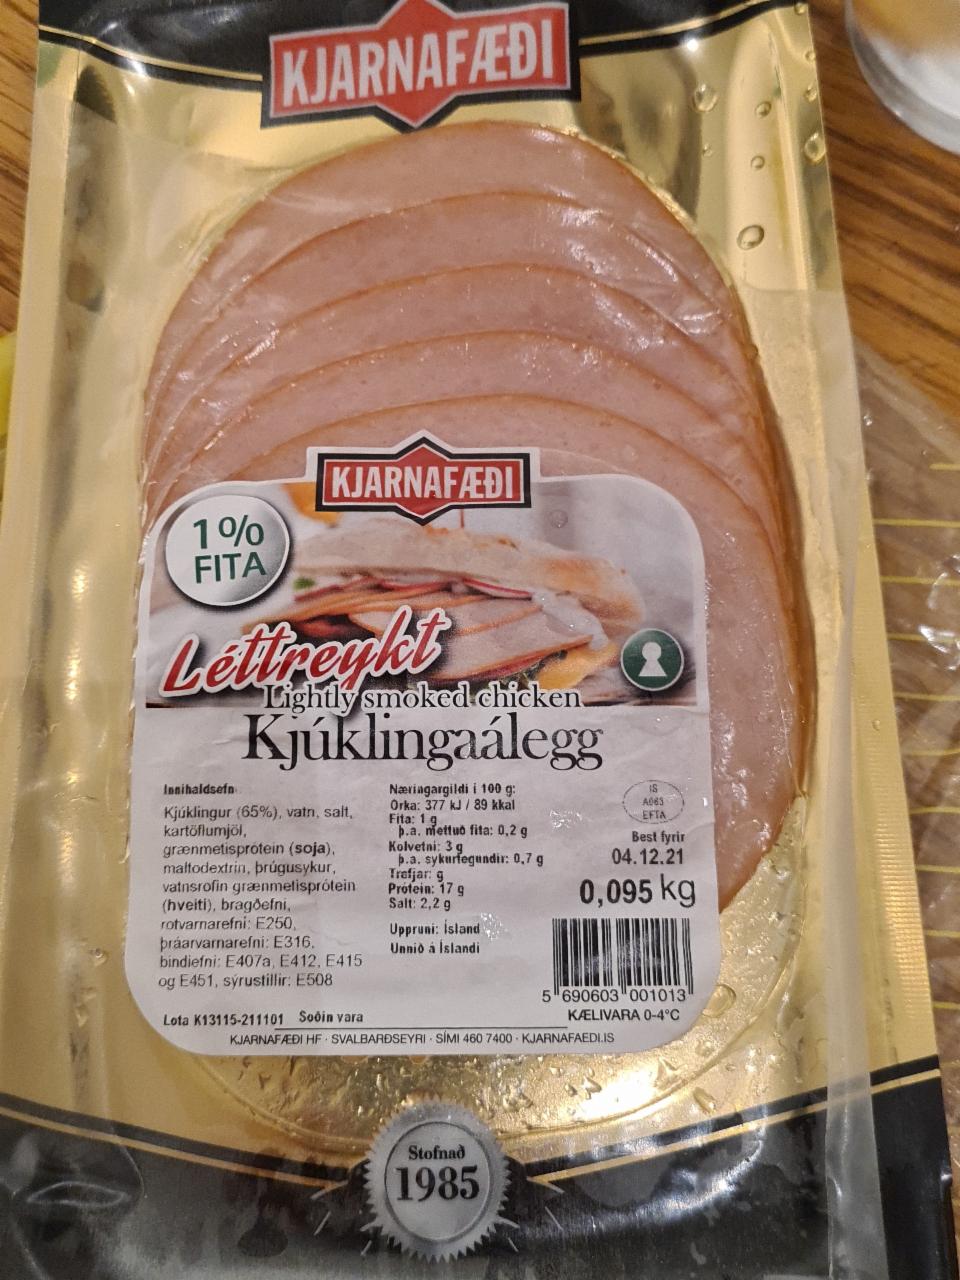 Fotografie - Léttreykt Kjúklingaálegg Lightly smoked chicken Kjarnafæði